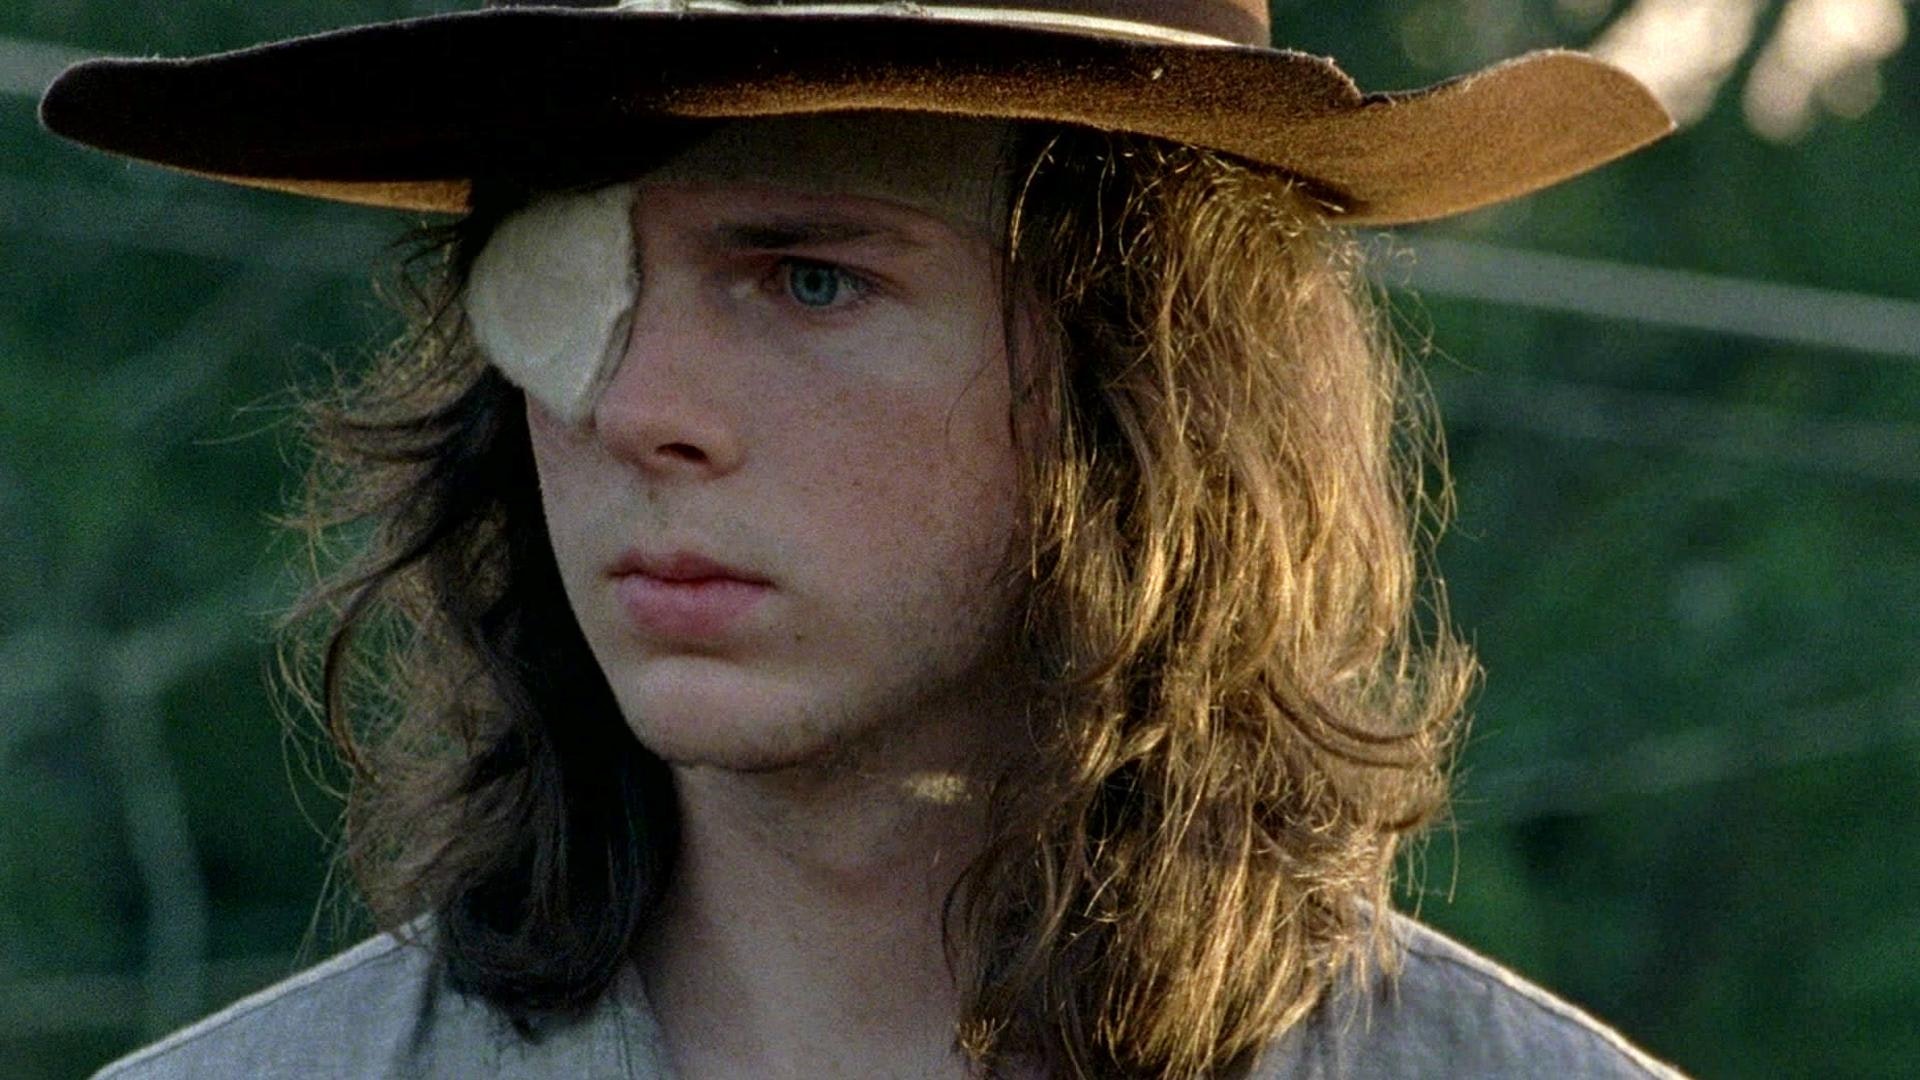 Carl Walking Dead